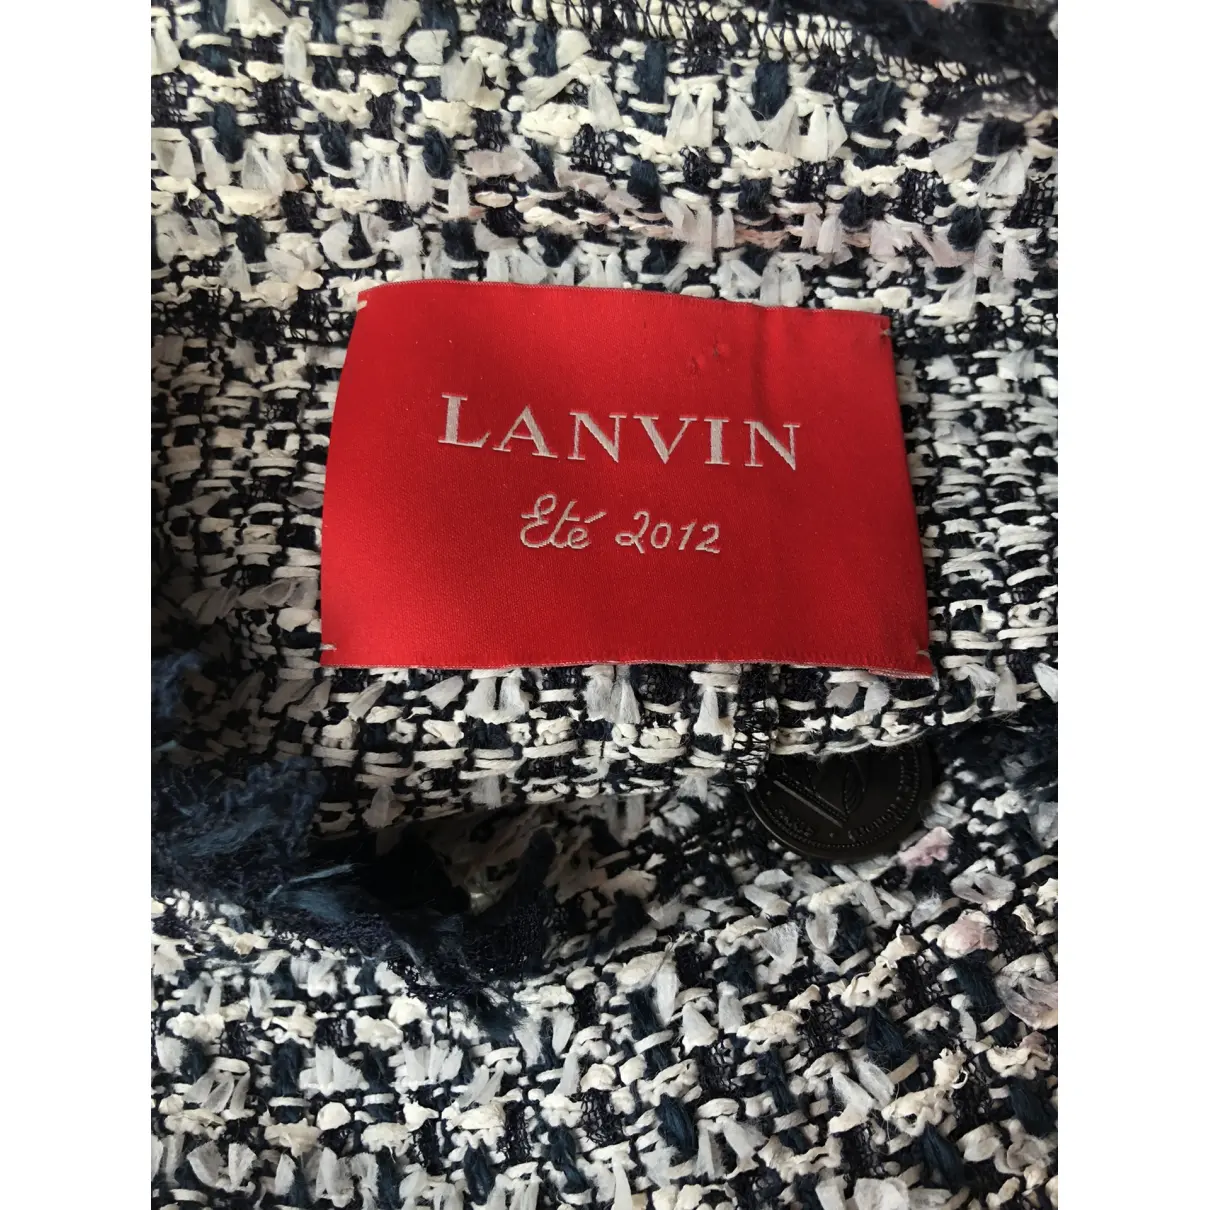 Buy Lanvin Coat online